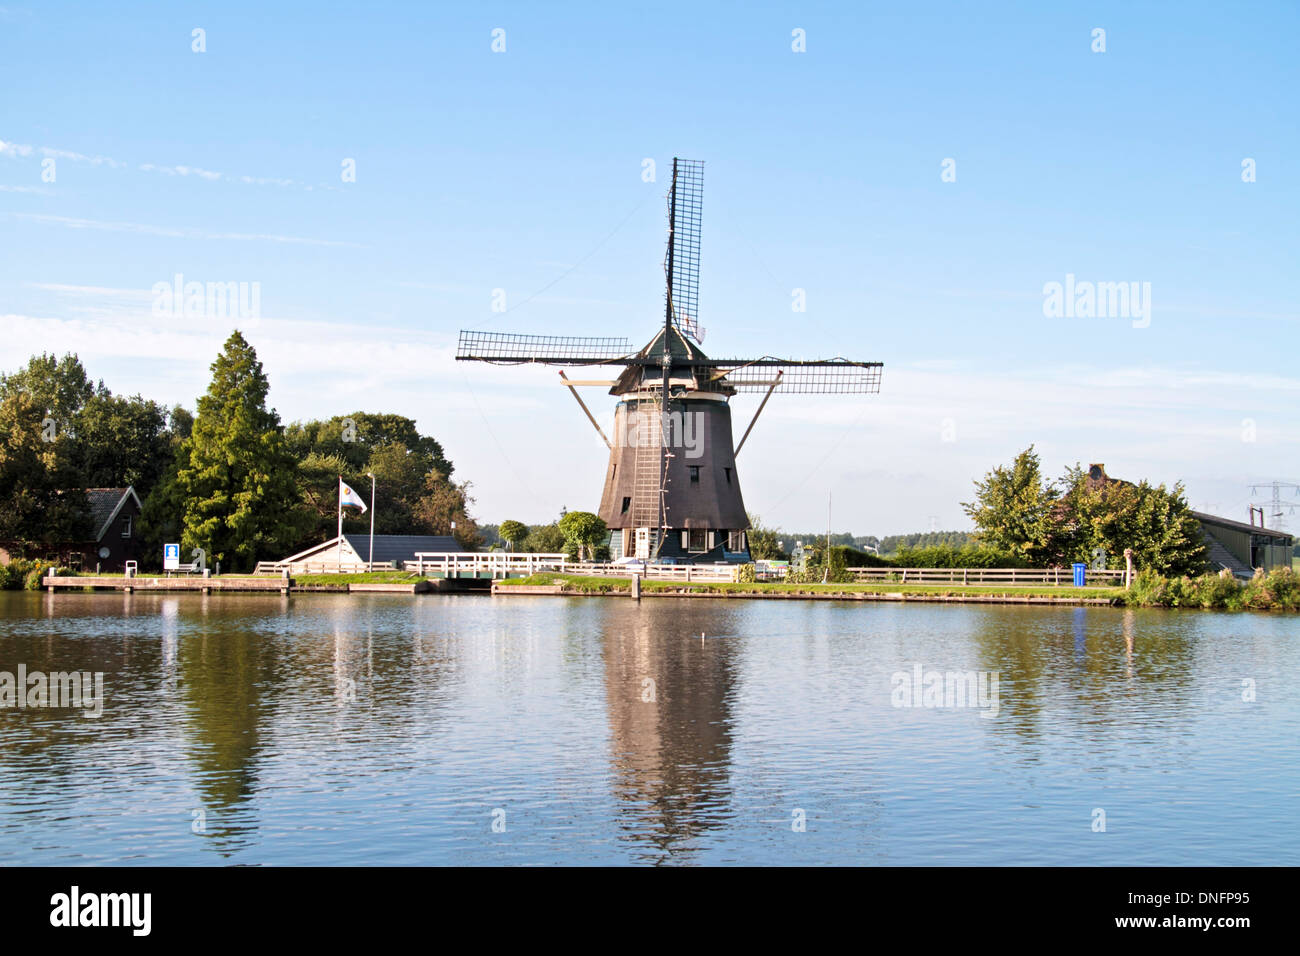 Mittelalterliche Windmühle auf dem Lande aus den Niederlanden Stockfoto